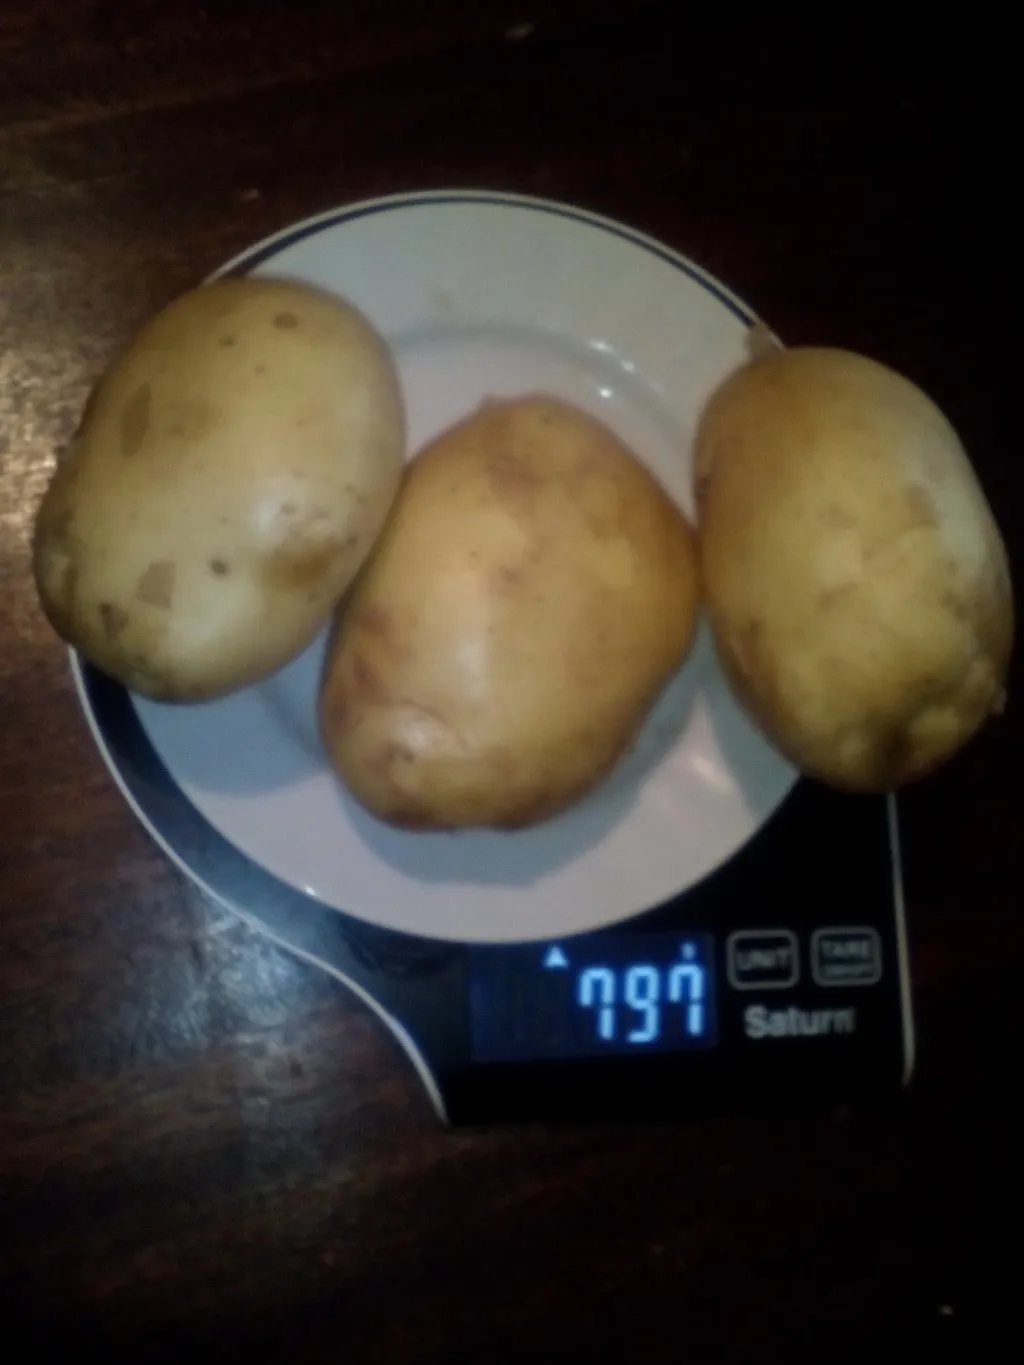  Картофель вес клубни от 70 до 500 гр.  в Брянске 6